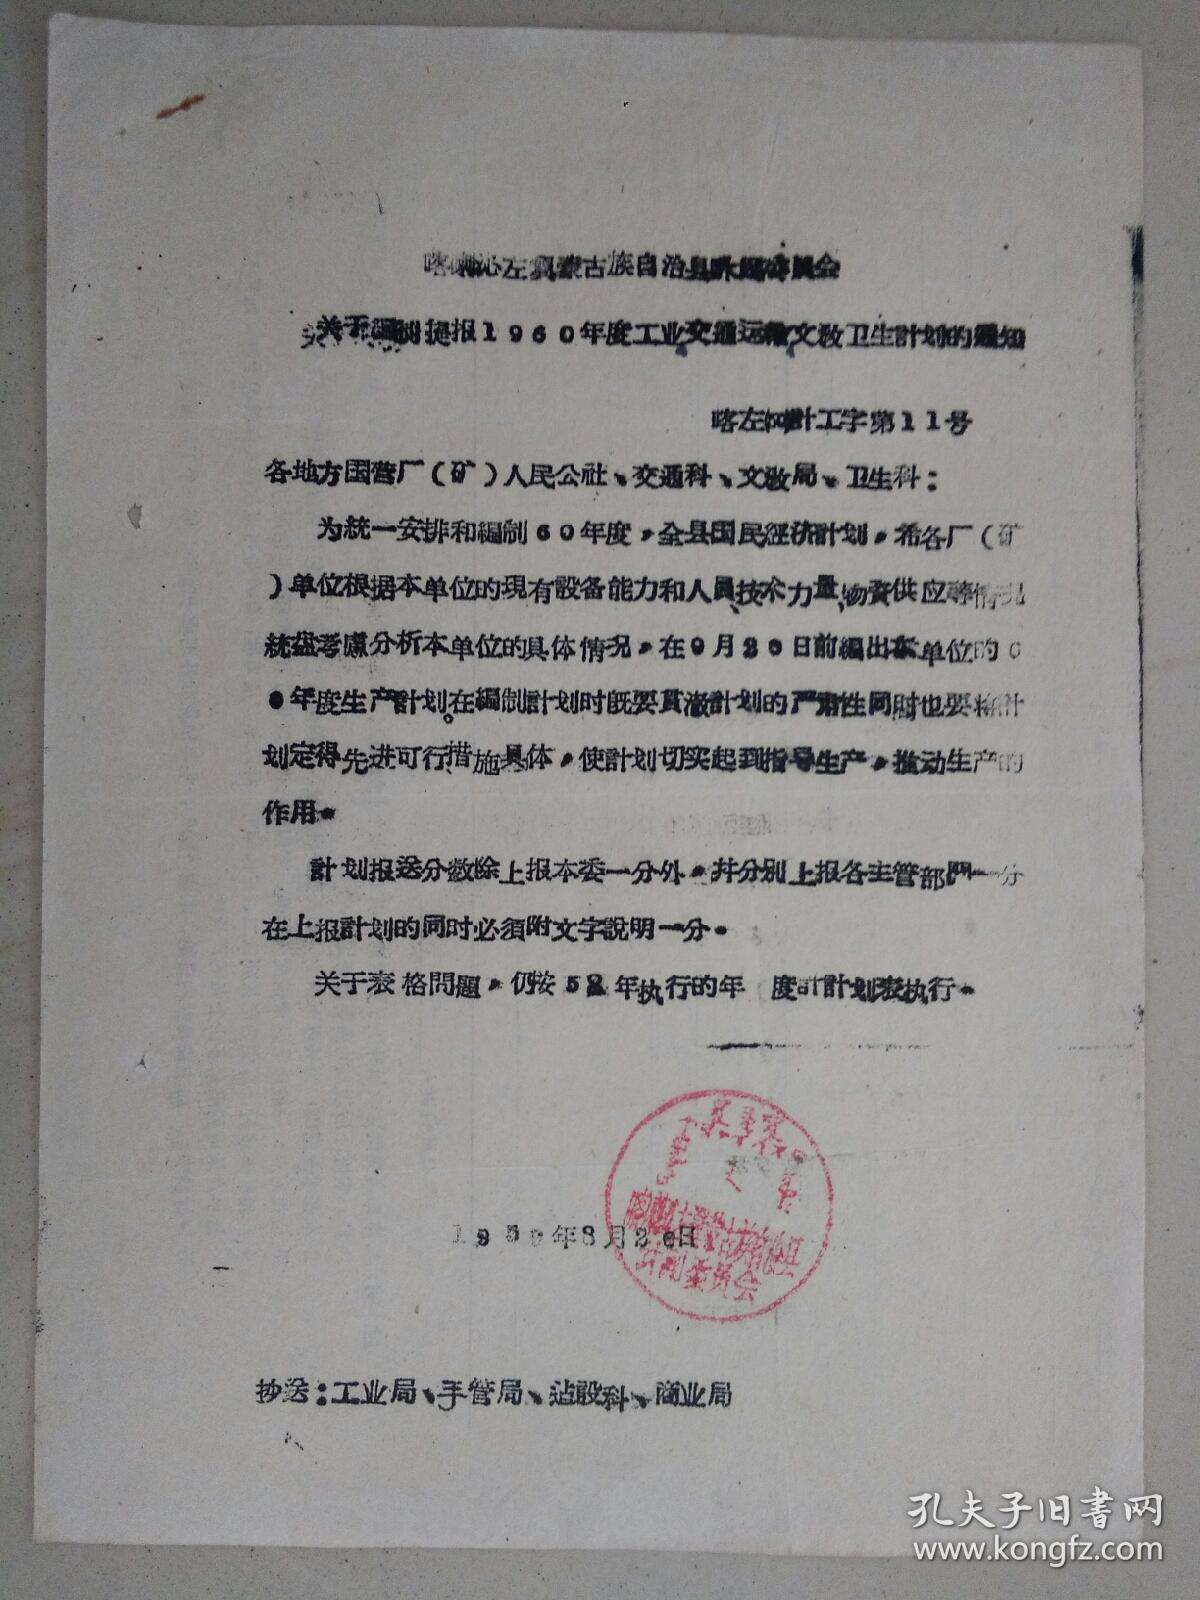 喀左蒙古族自治县计划委员会“关于编制提报1960年度工业交通运输文教卫生计划的通知”
1959年8月20日